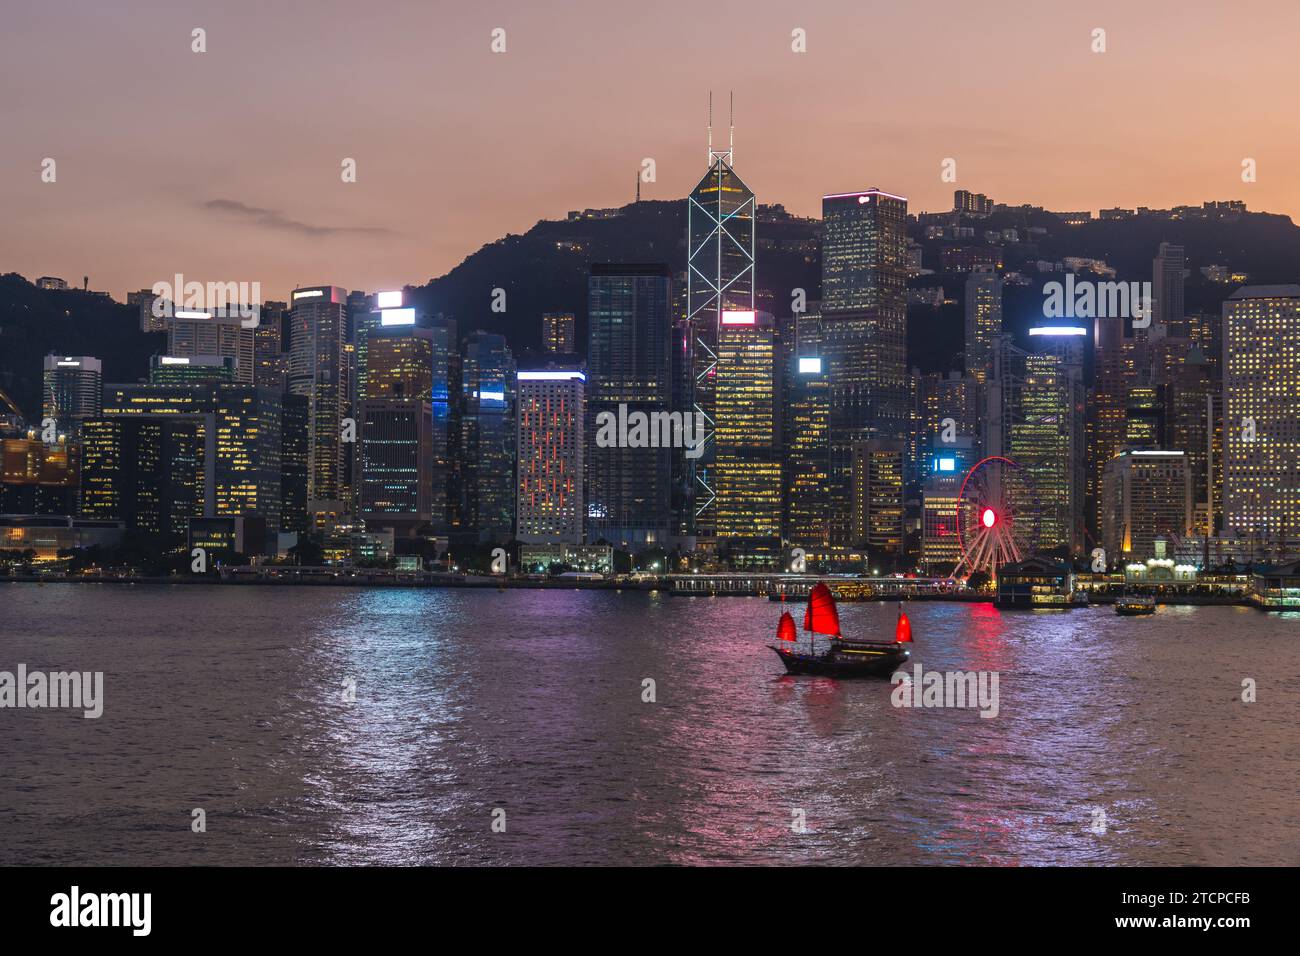 night view of victoria harbor and hongkong island in hong kong, China Stock Photo